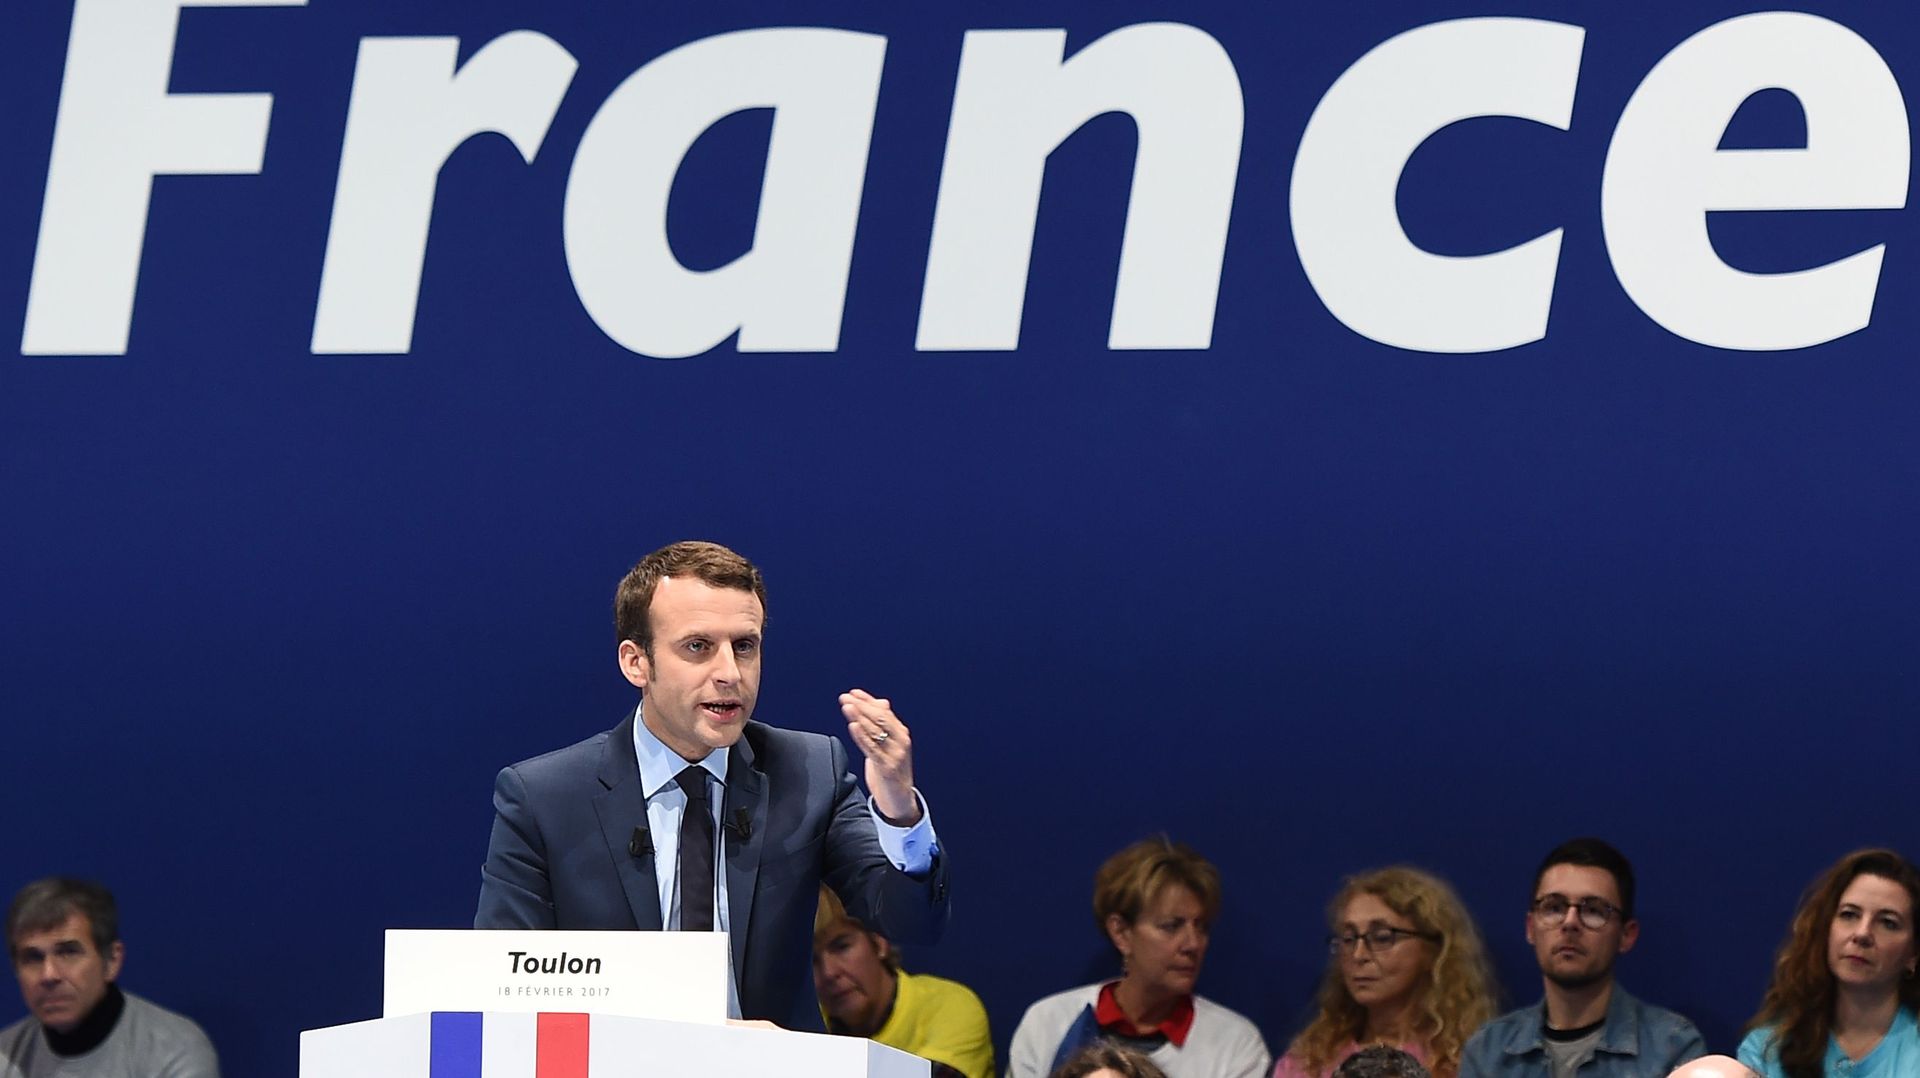 La colonisation "crime contre l'humanité": le candidat Macron paraphrase de Gaulle 